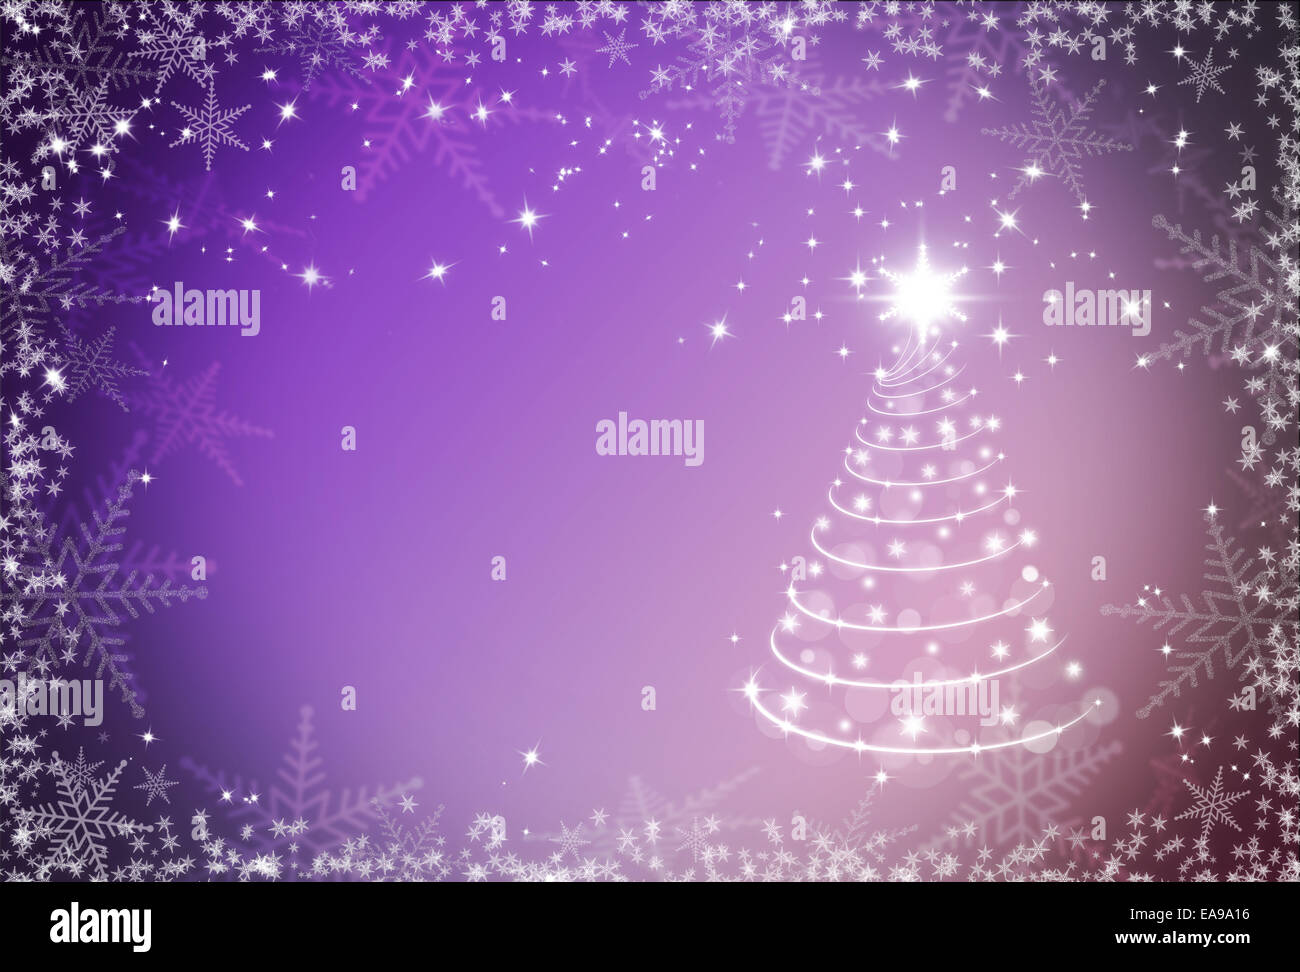 Navidad con copos de nieve de fondo púrpura bastidor y árbol de Navidad Foto de stock